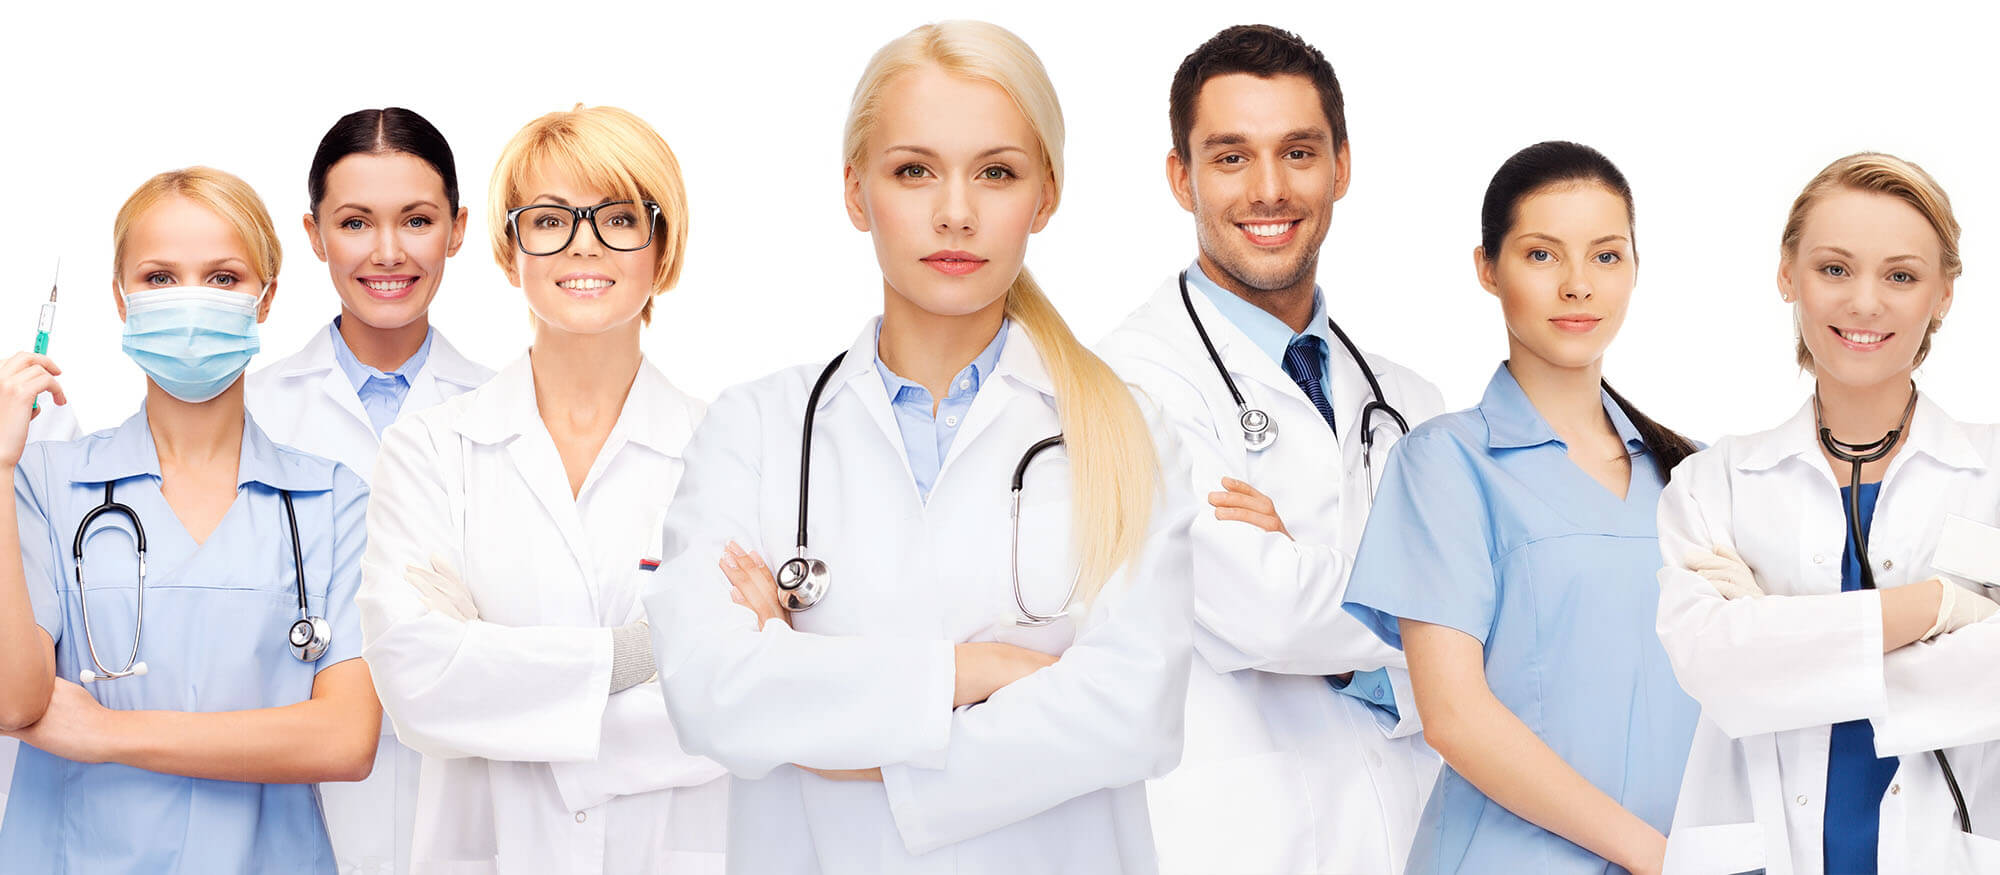 Servizio di Assistenza - Studiare Medicina all'estero e Odontoiatria